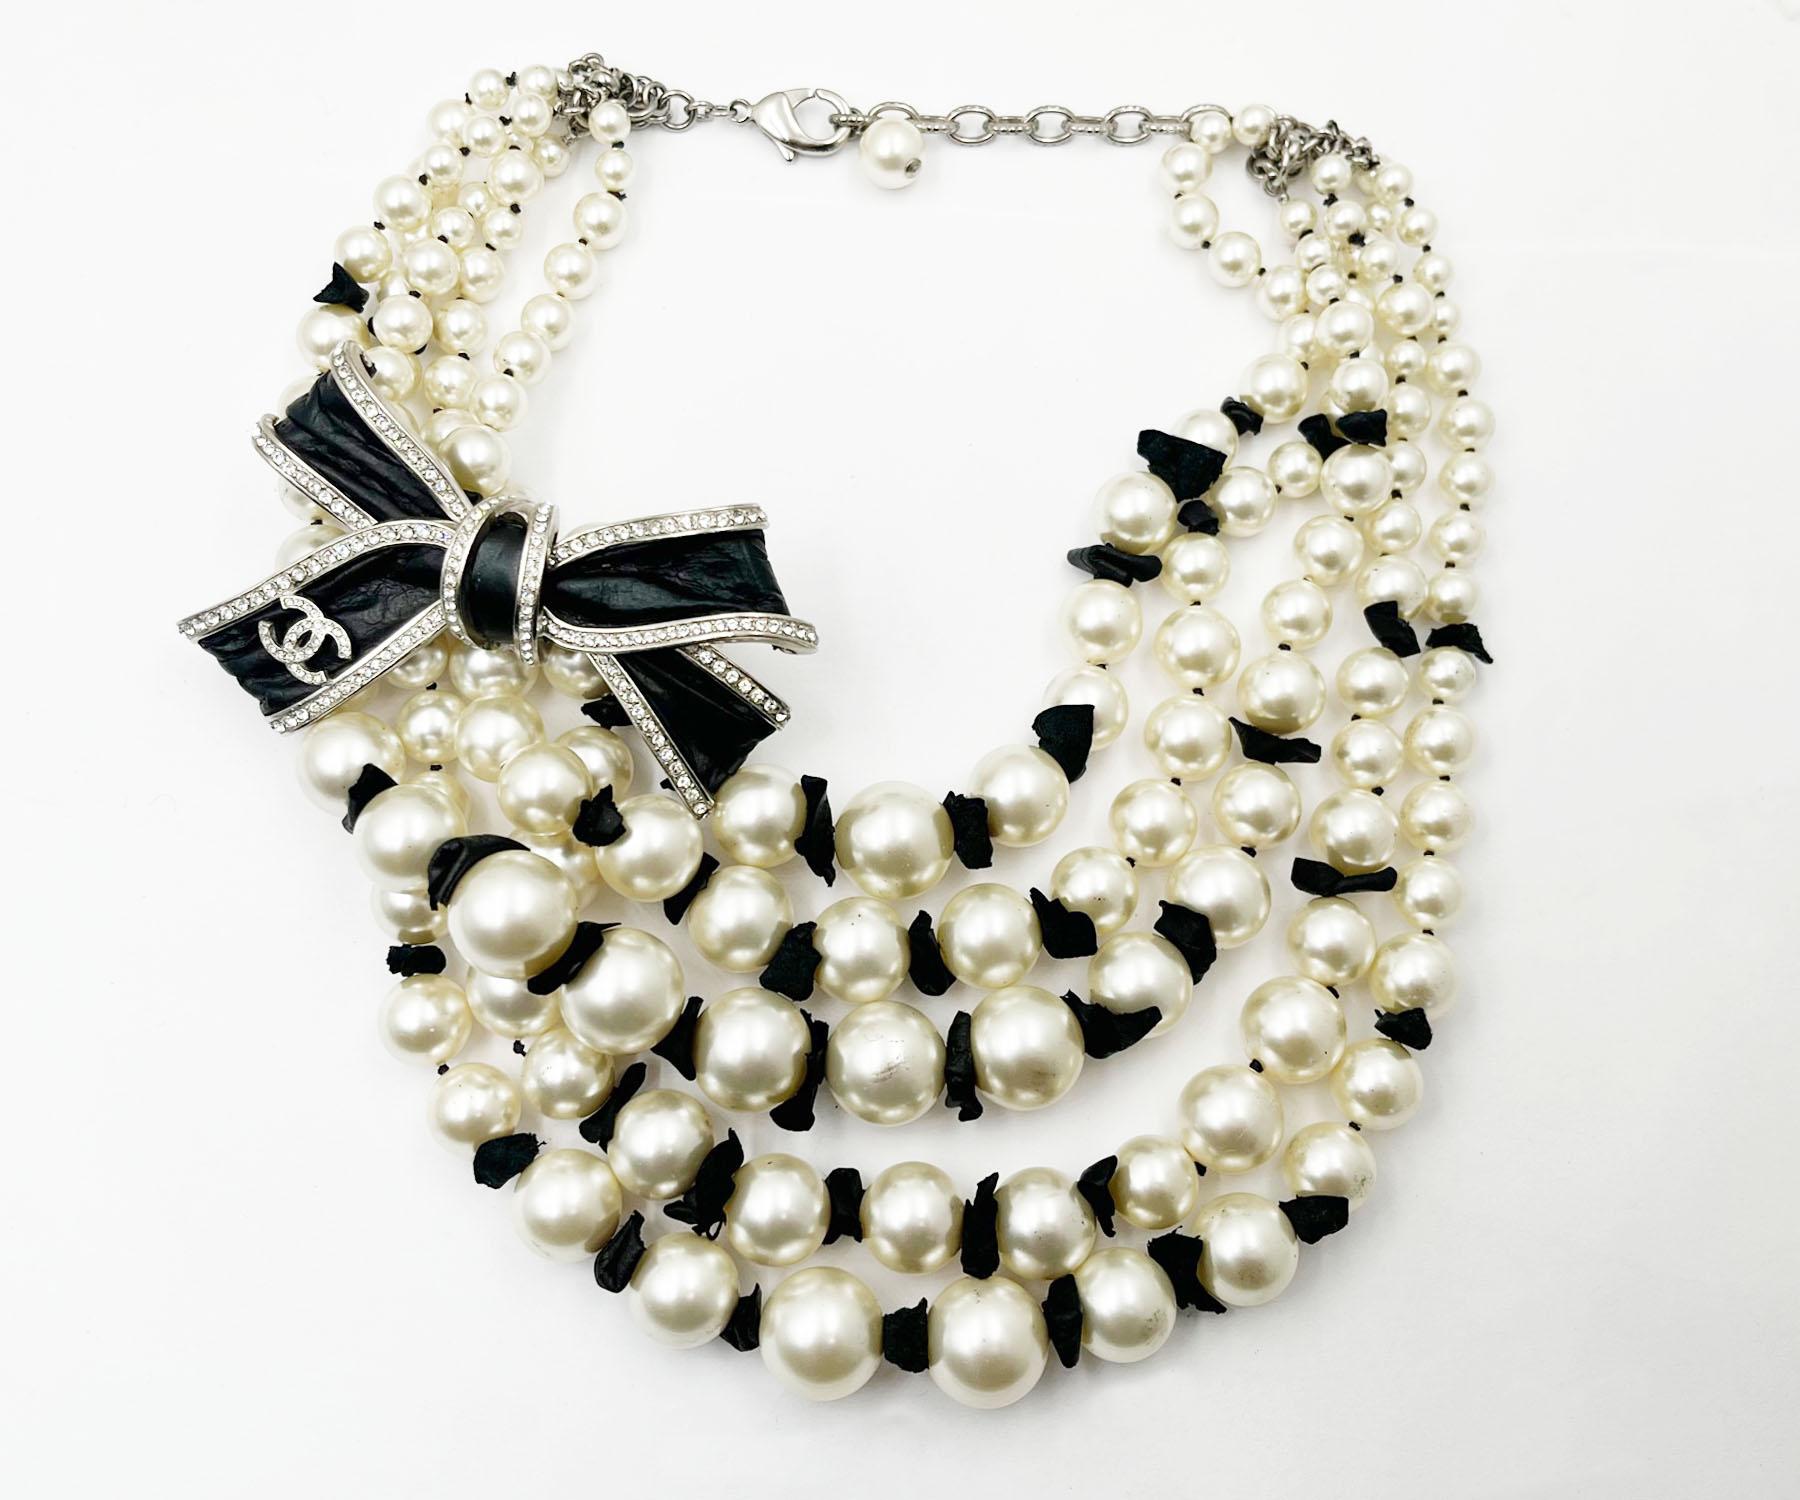 Chanel - Collier court 5 rangs de perles en cuir avec ruban noir Silver CC

* Marqué 16
* Fabriqué en France
* Livré avec sa boîte d'origine et son sac à poussière

-Il mesure environ 17